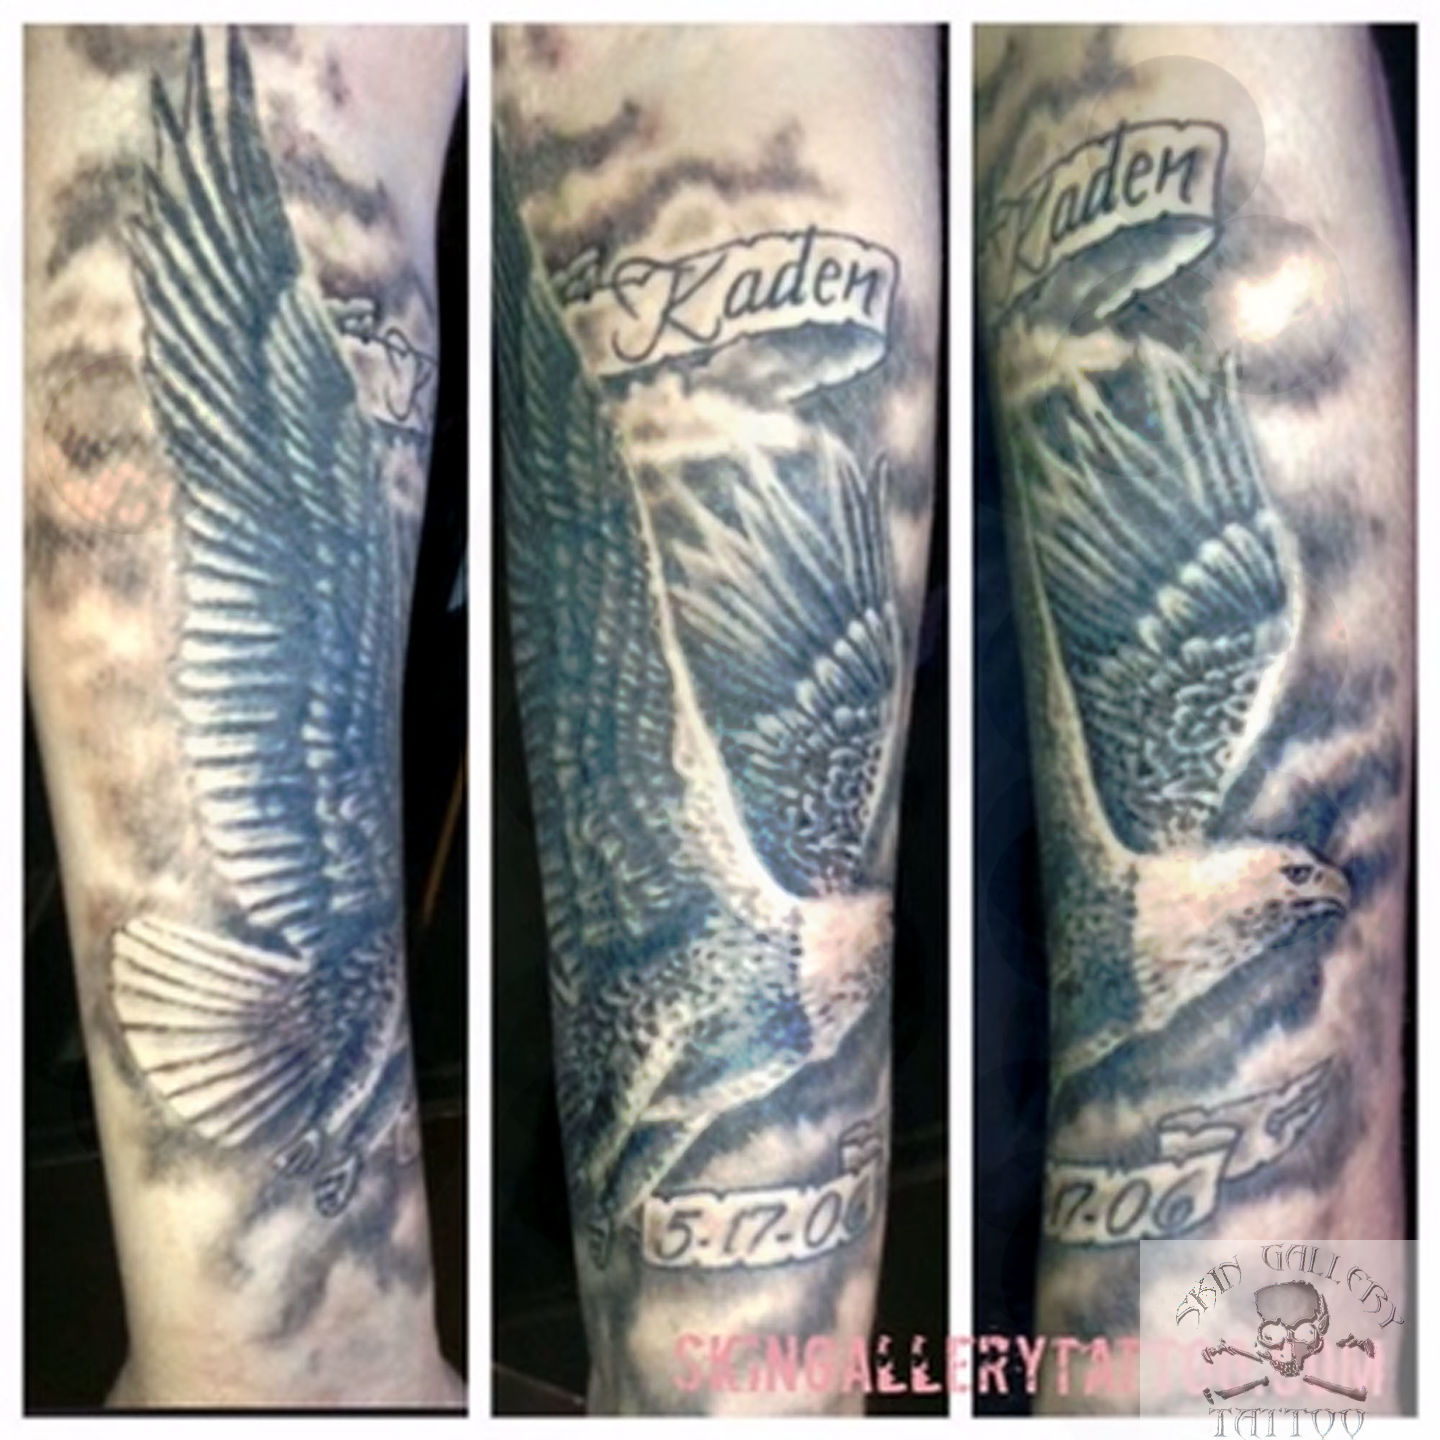 eagle forearm tattoo